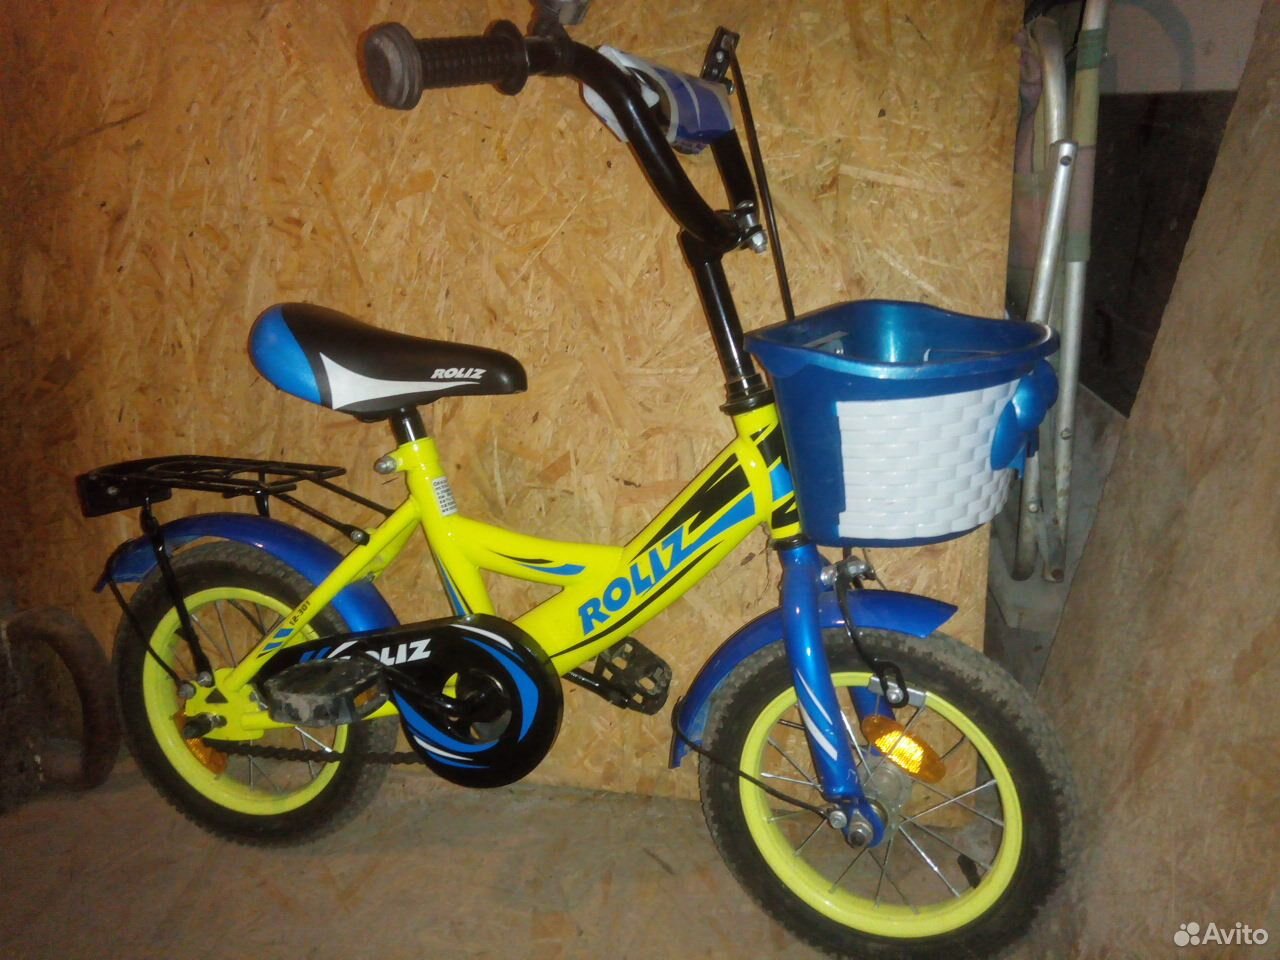 Авито калининград купить велосипед. Сомон ТЧ велосипед. Детский велосипед продаю бу. Велосипед продам детский Юнком. Детский велосипед Upland Legend Pilot 12 bx12005.